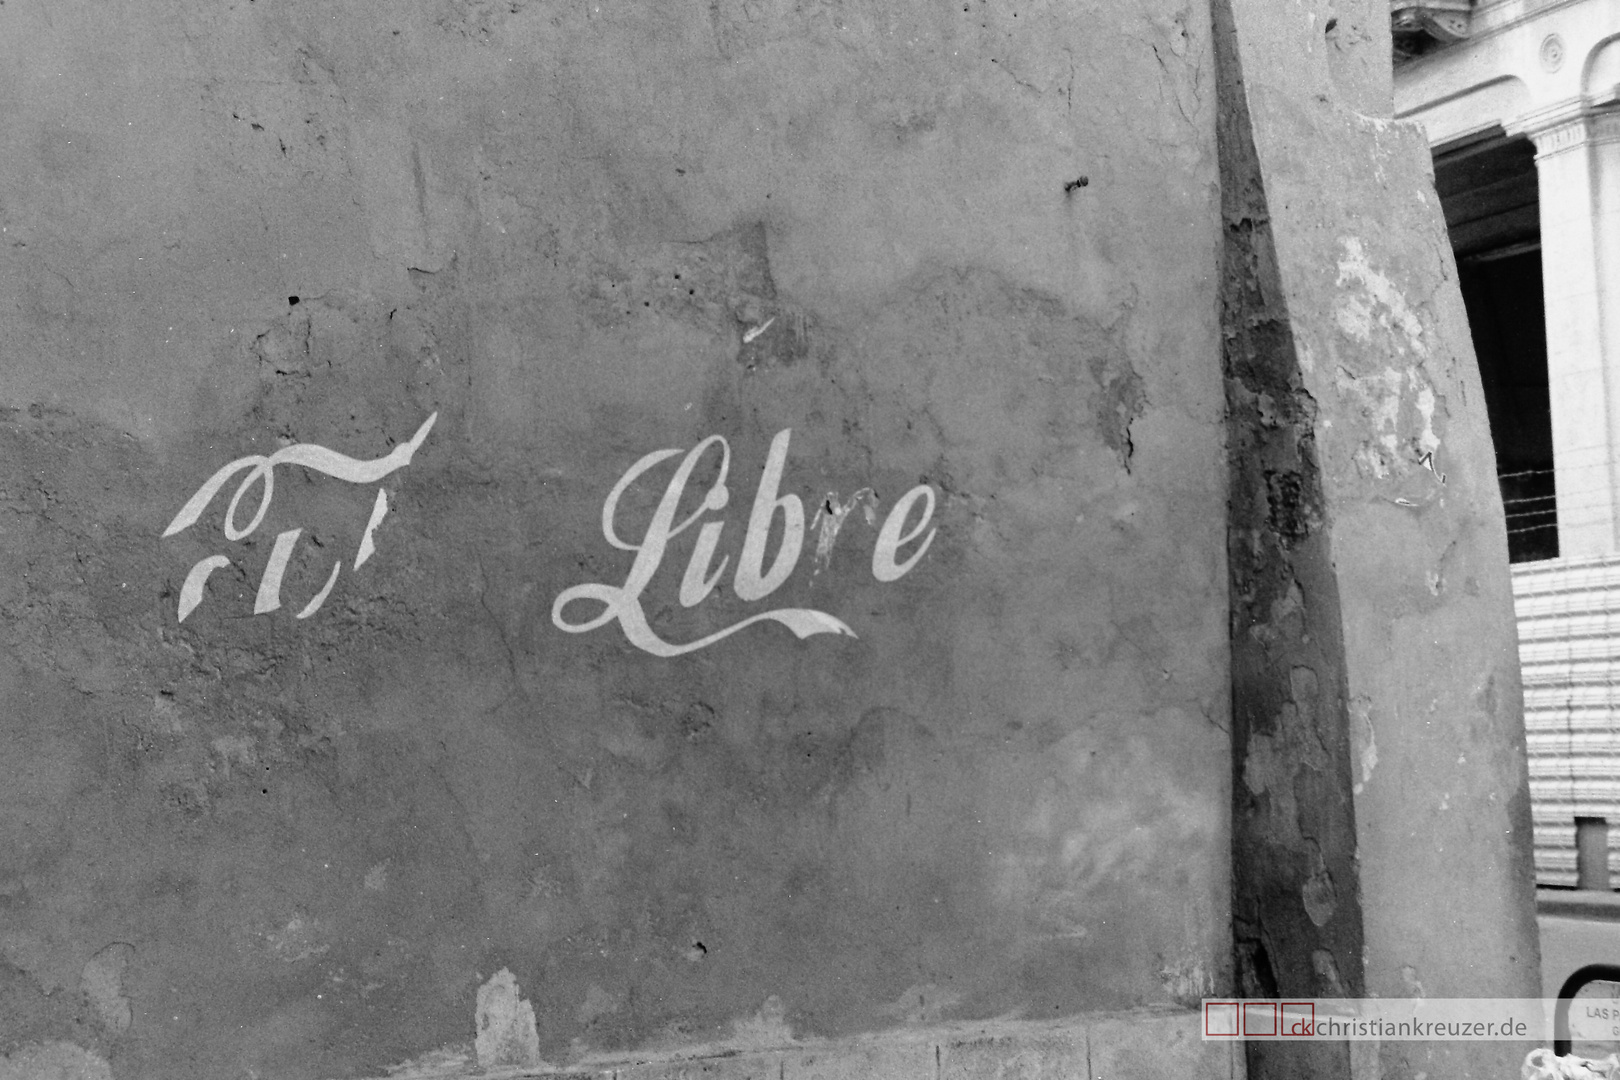 Cuba Libre in Havanna